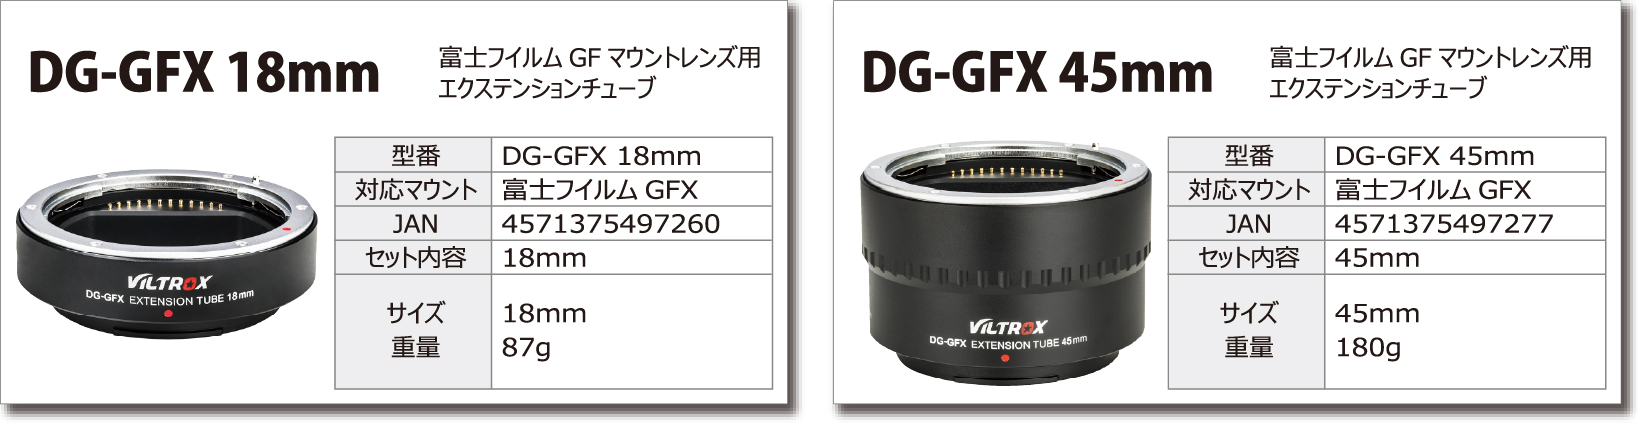 DG-GFX18㎜富士フイルムGFマウントレンズ用エクステンションチューブ DG-GFX45mm 富士フイルムGFマウントレンズ用エクステンションチューブ